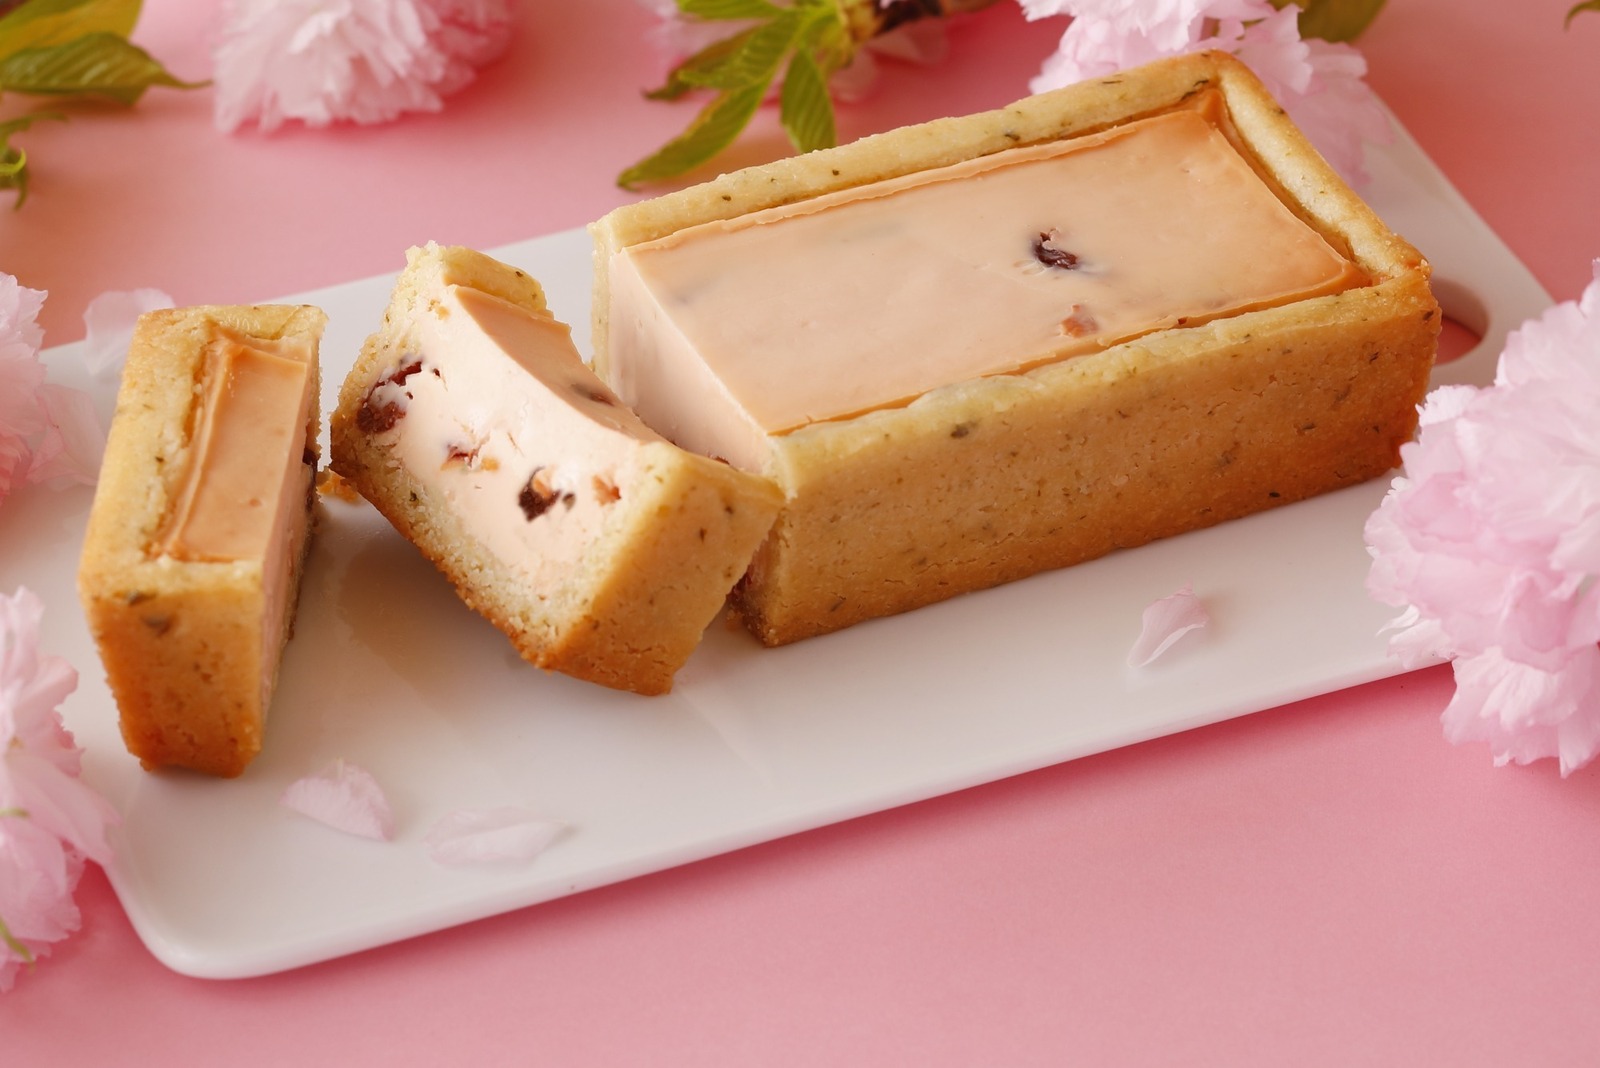 「春の手焼きチーズケーキ(さくら味)」1本入 2,970円(税込)